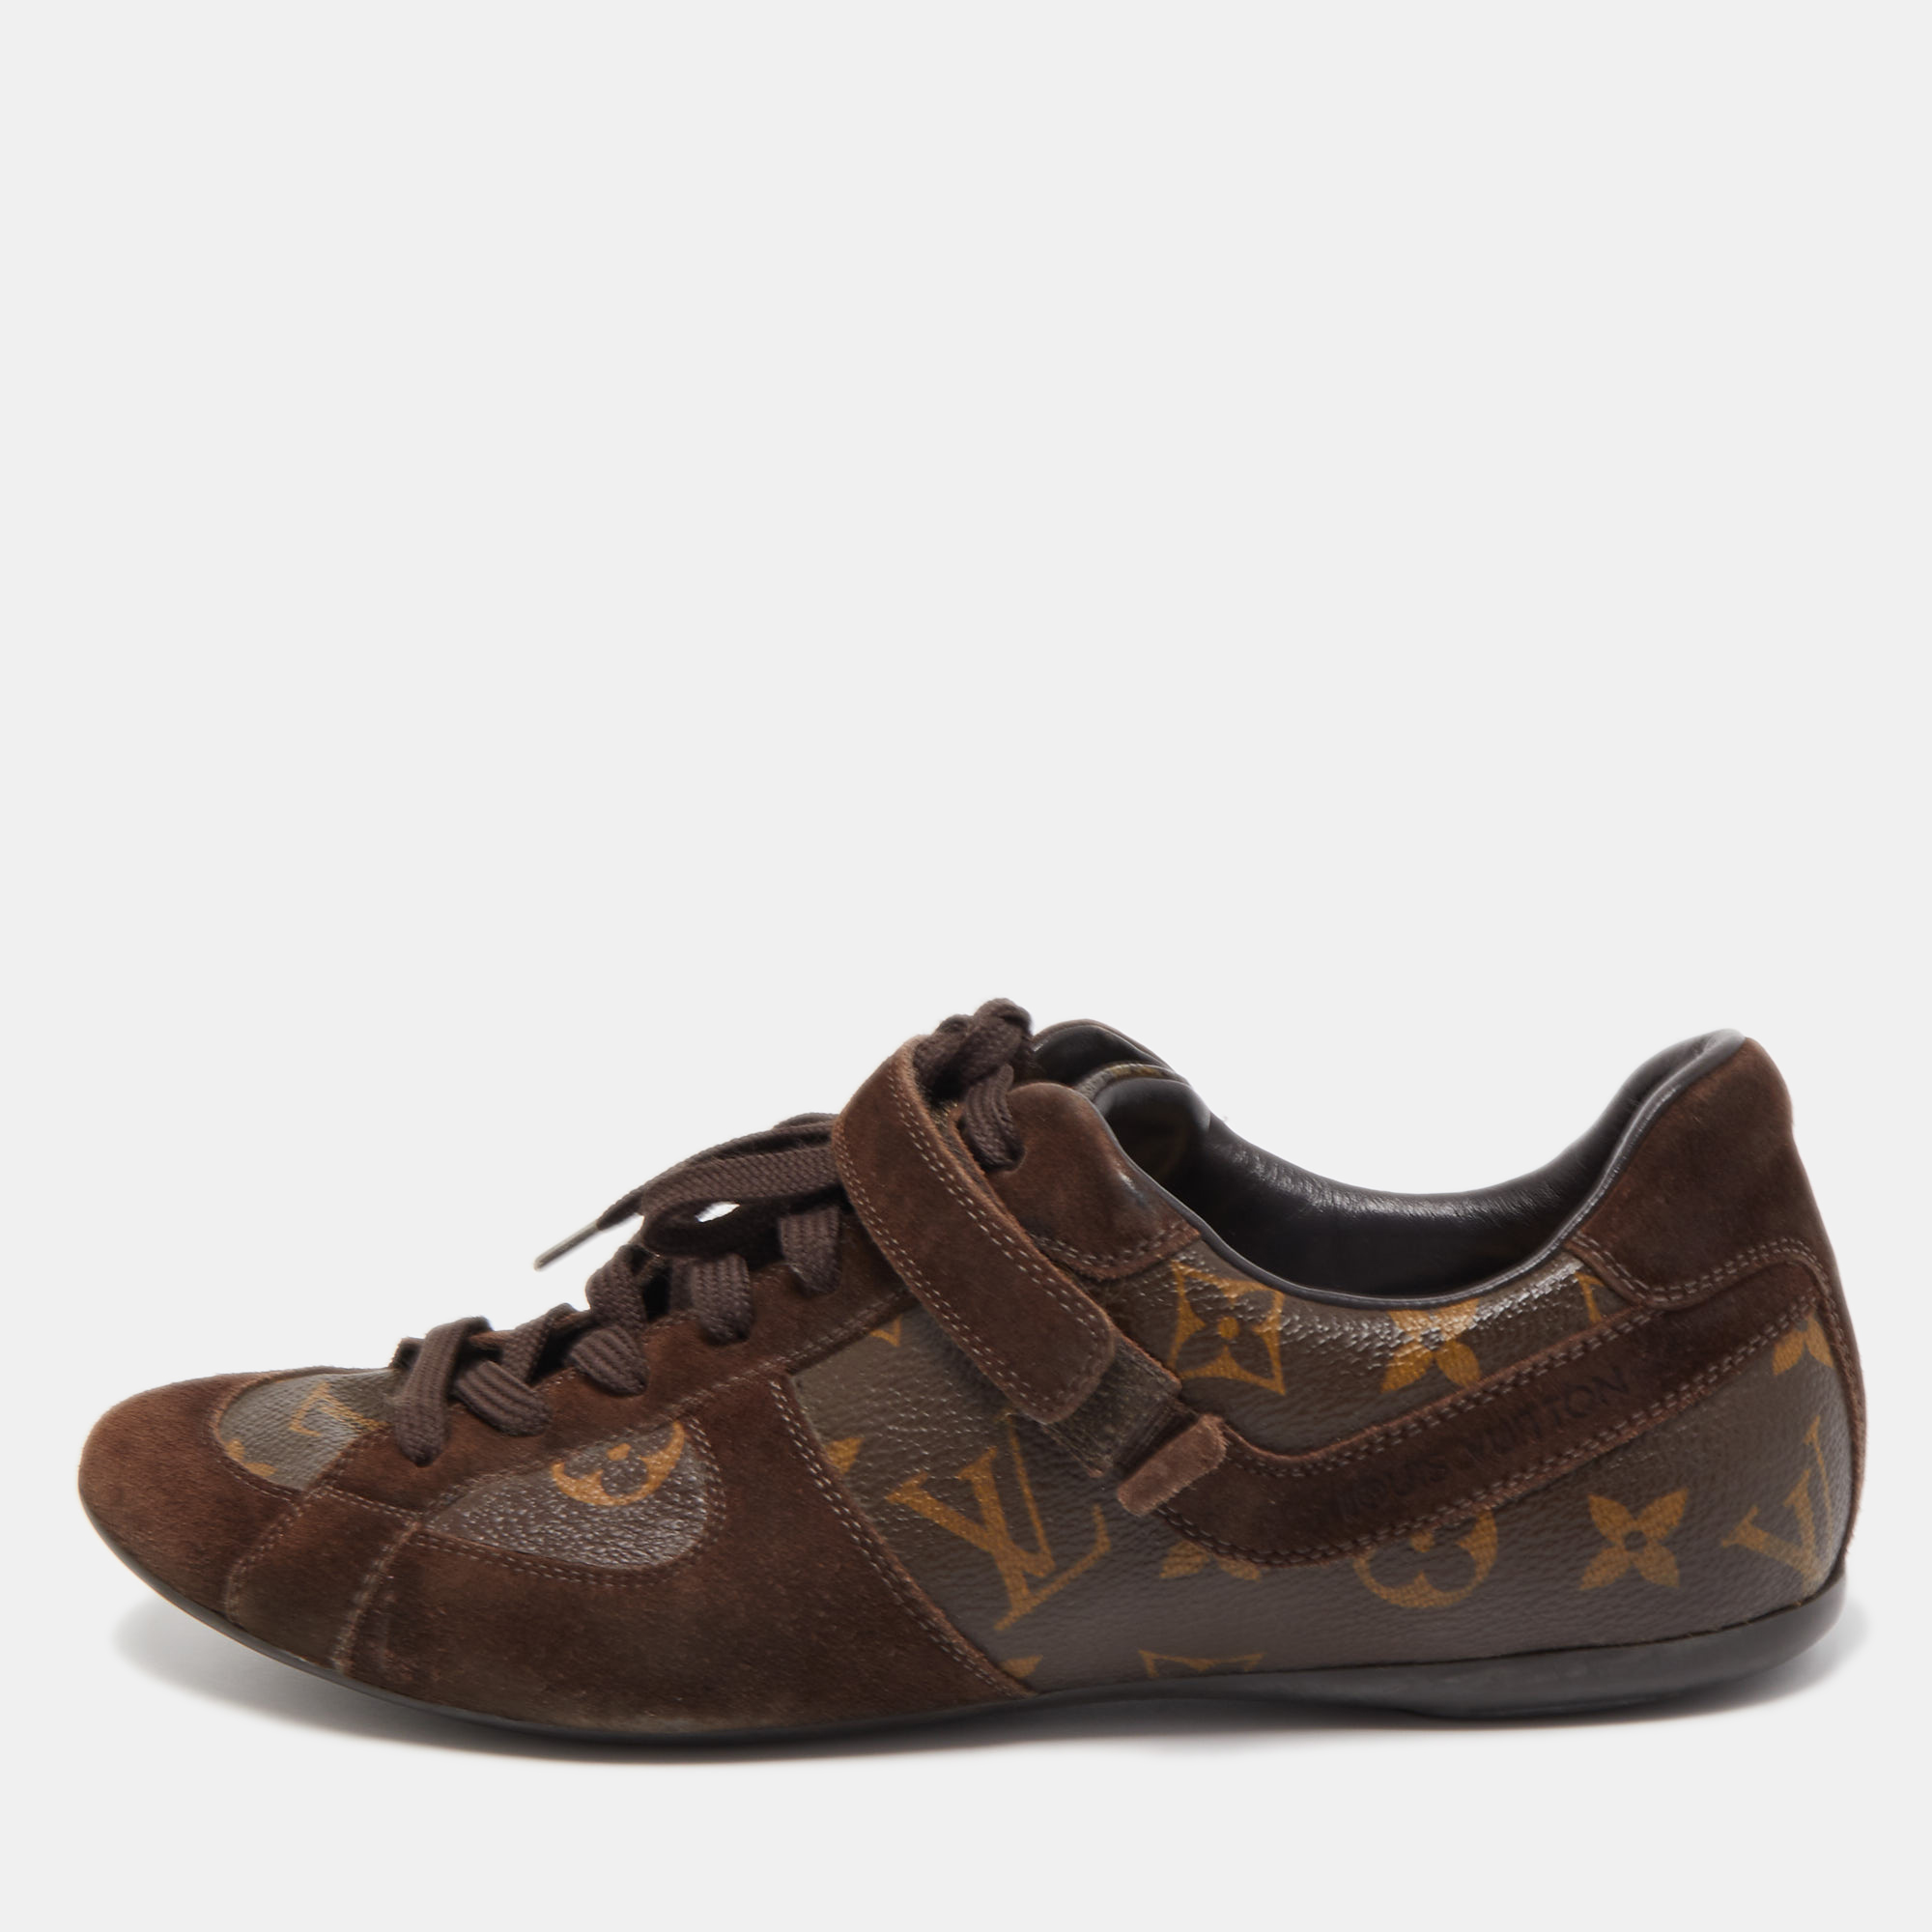 Louis Vuitton Black Tennis Suede shoes